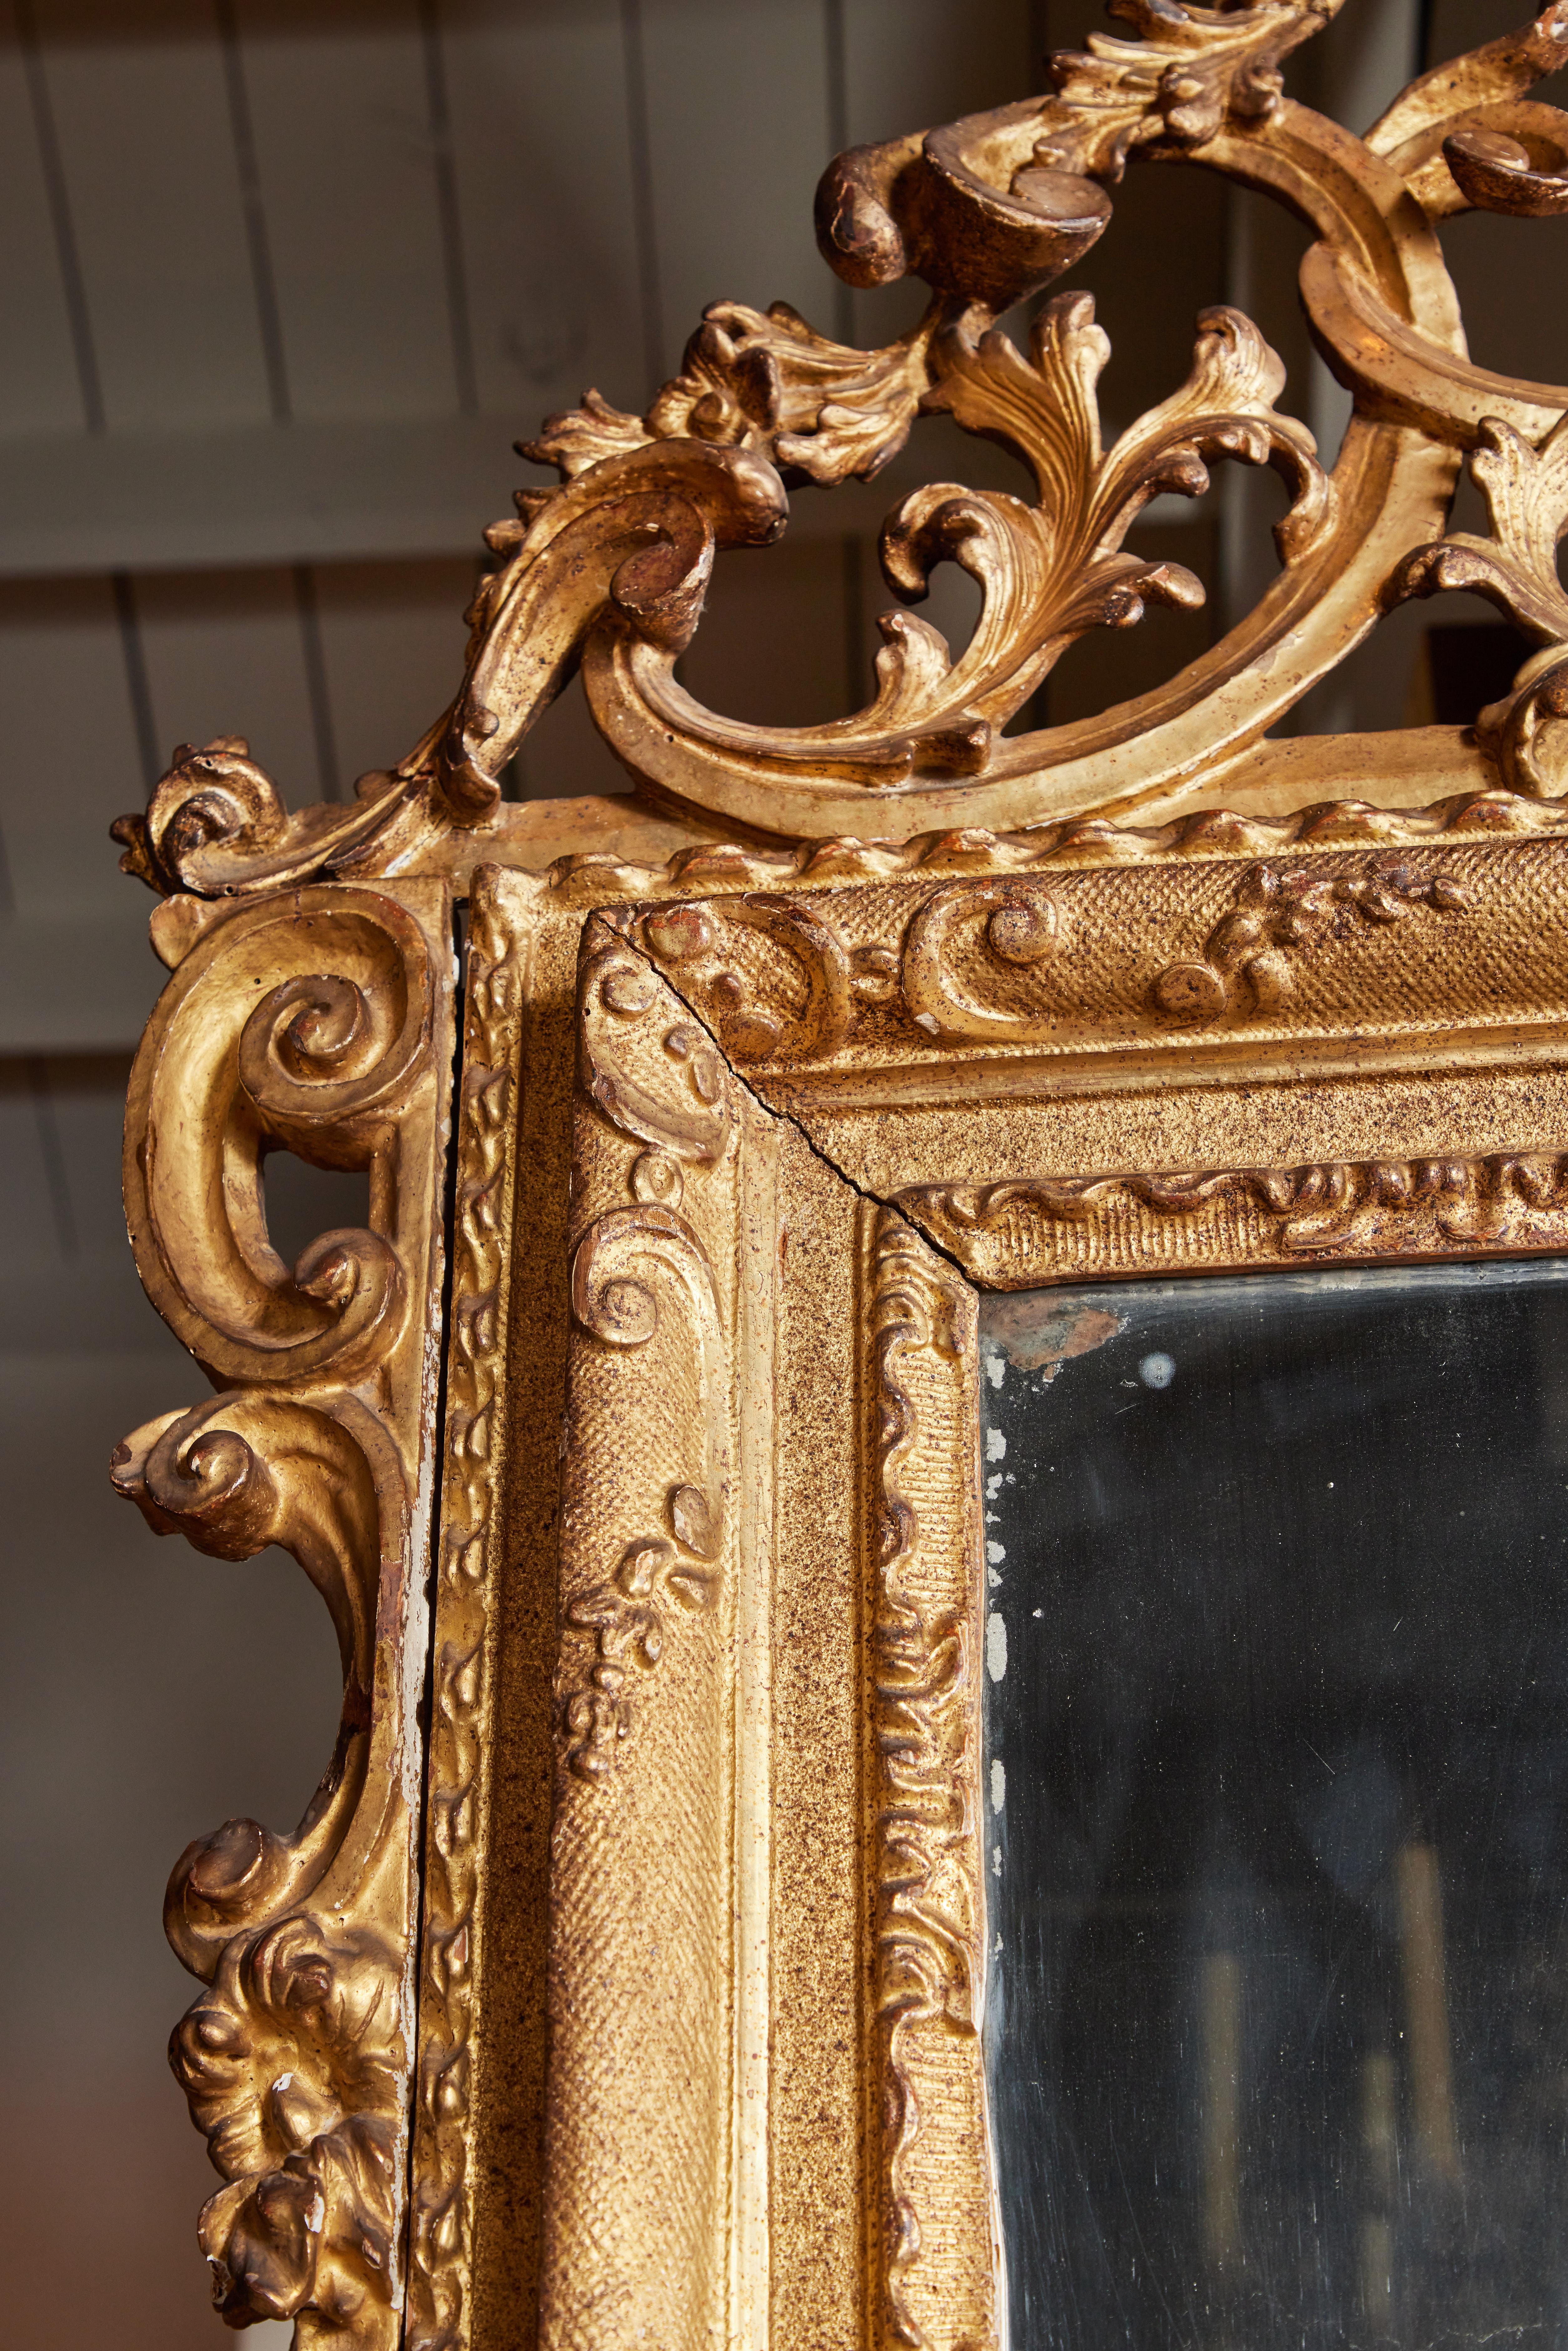 Miroir vénitien de grande taille, datant de 1760, sculpté à la main, gesso et doré à l'or fin 22 carats, serti de verre au mercure d'origine et entouré de sculptures serpentines en relief. L'ensemble est surmonté d'une couronne glorieuse, percée et